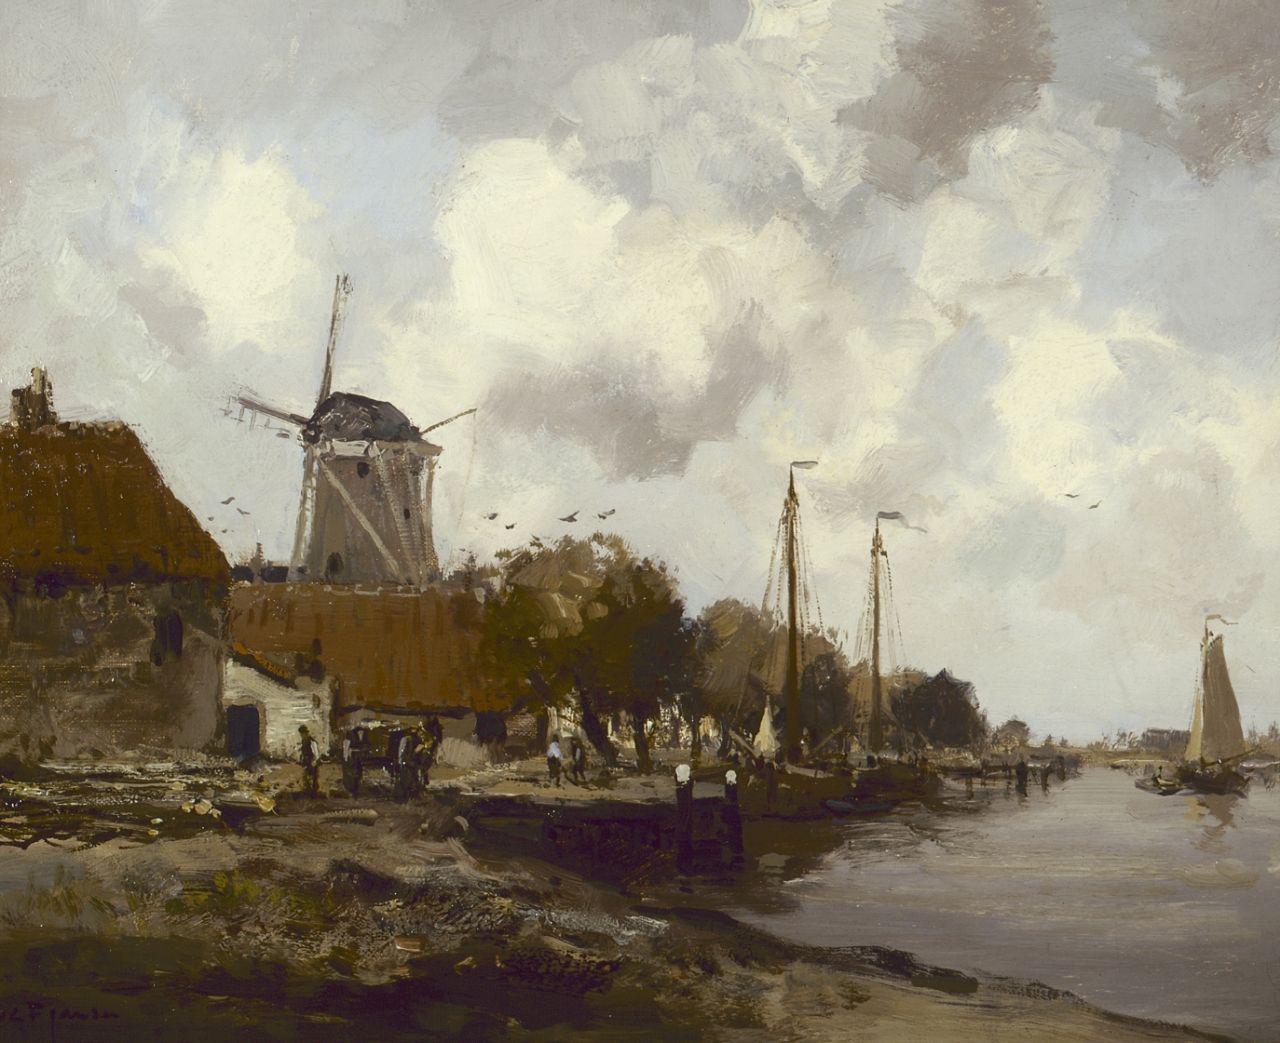 Jansen W.G.F.  | 'Willem' George Frederik Jansen, Village along the 'Zuiderzee', Öl auf Leinwand 41,0 x 51,0 cm, signed l.l.